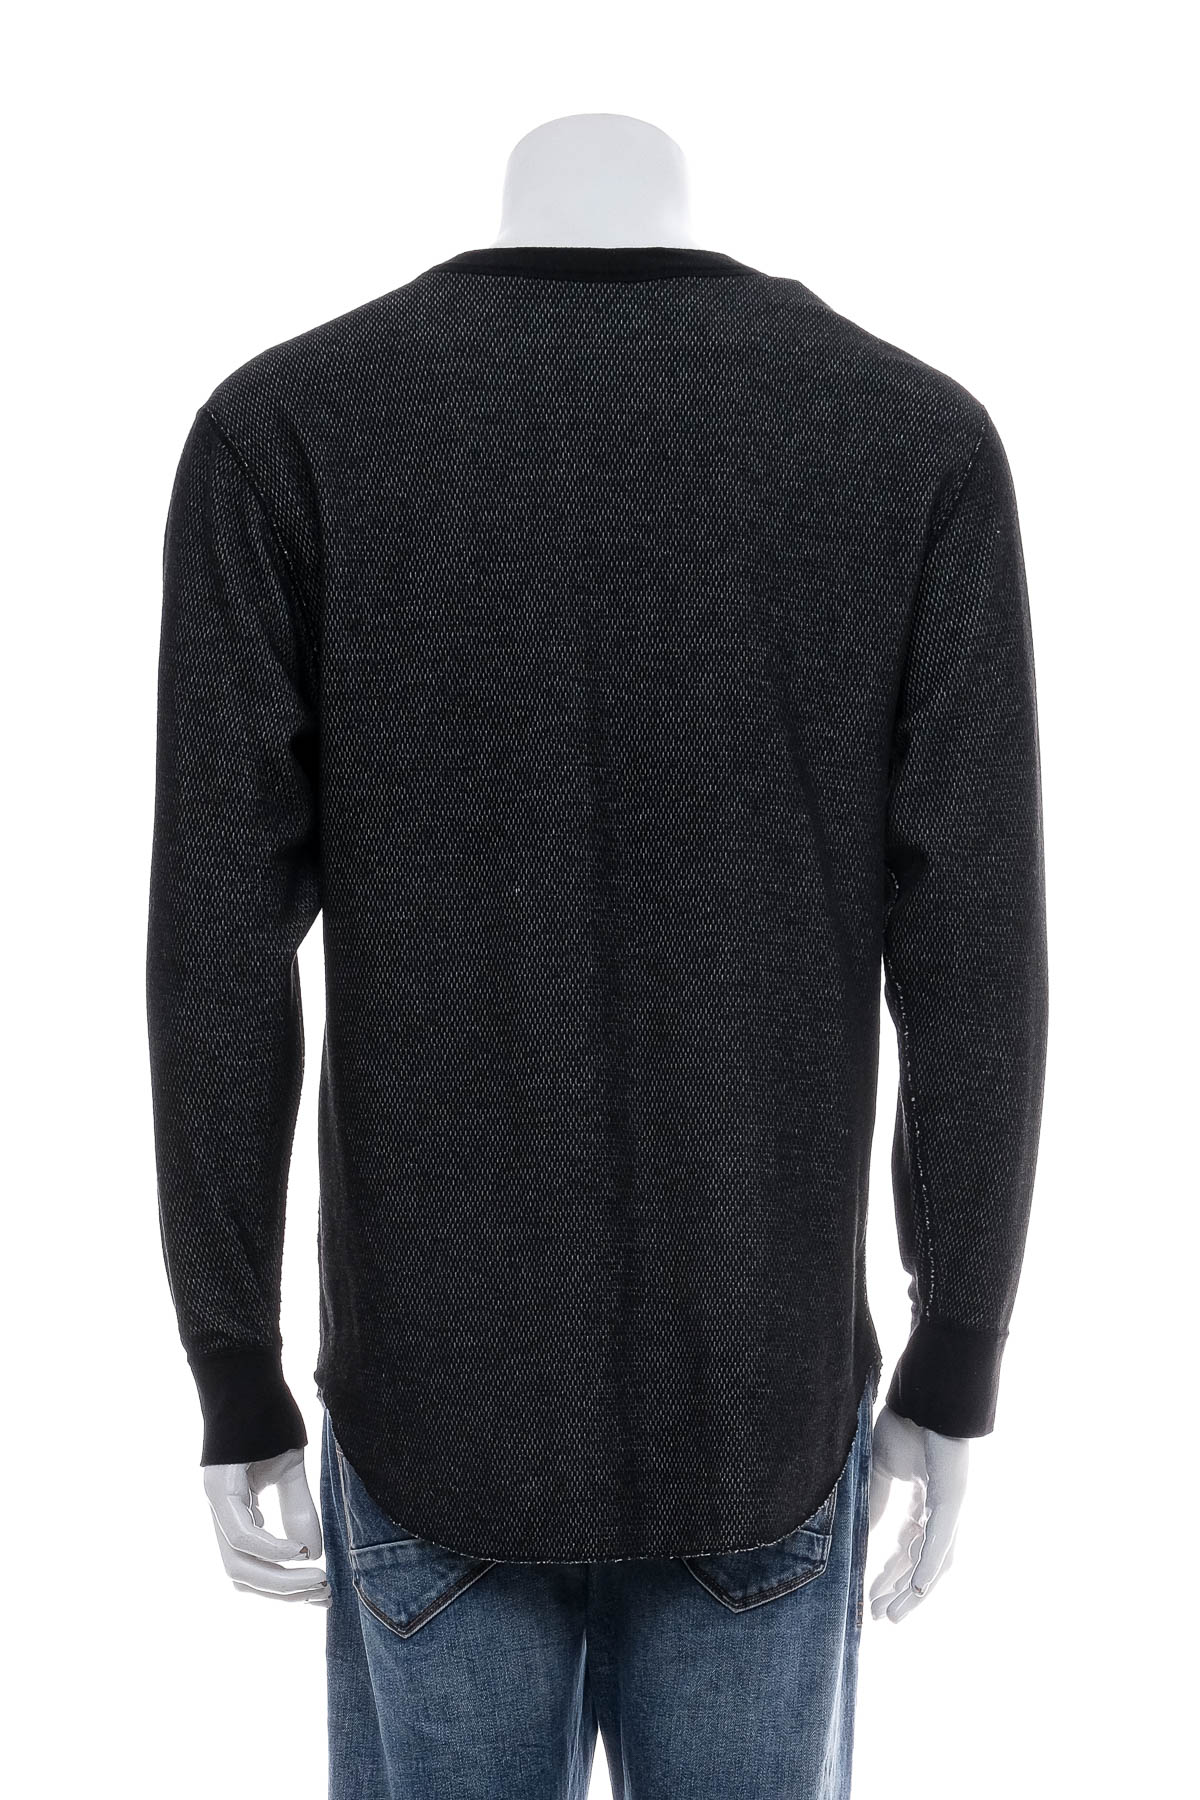 Men's sweater - Hanes - 1